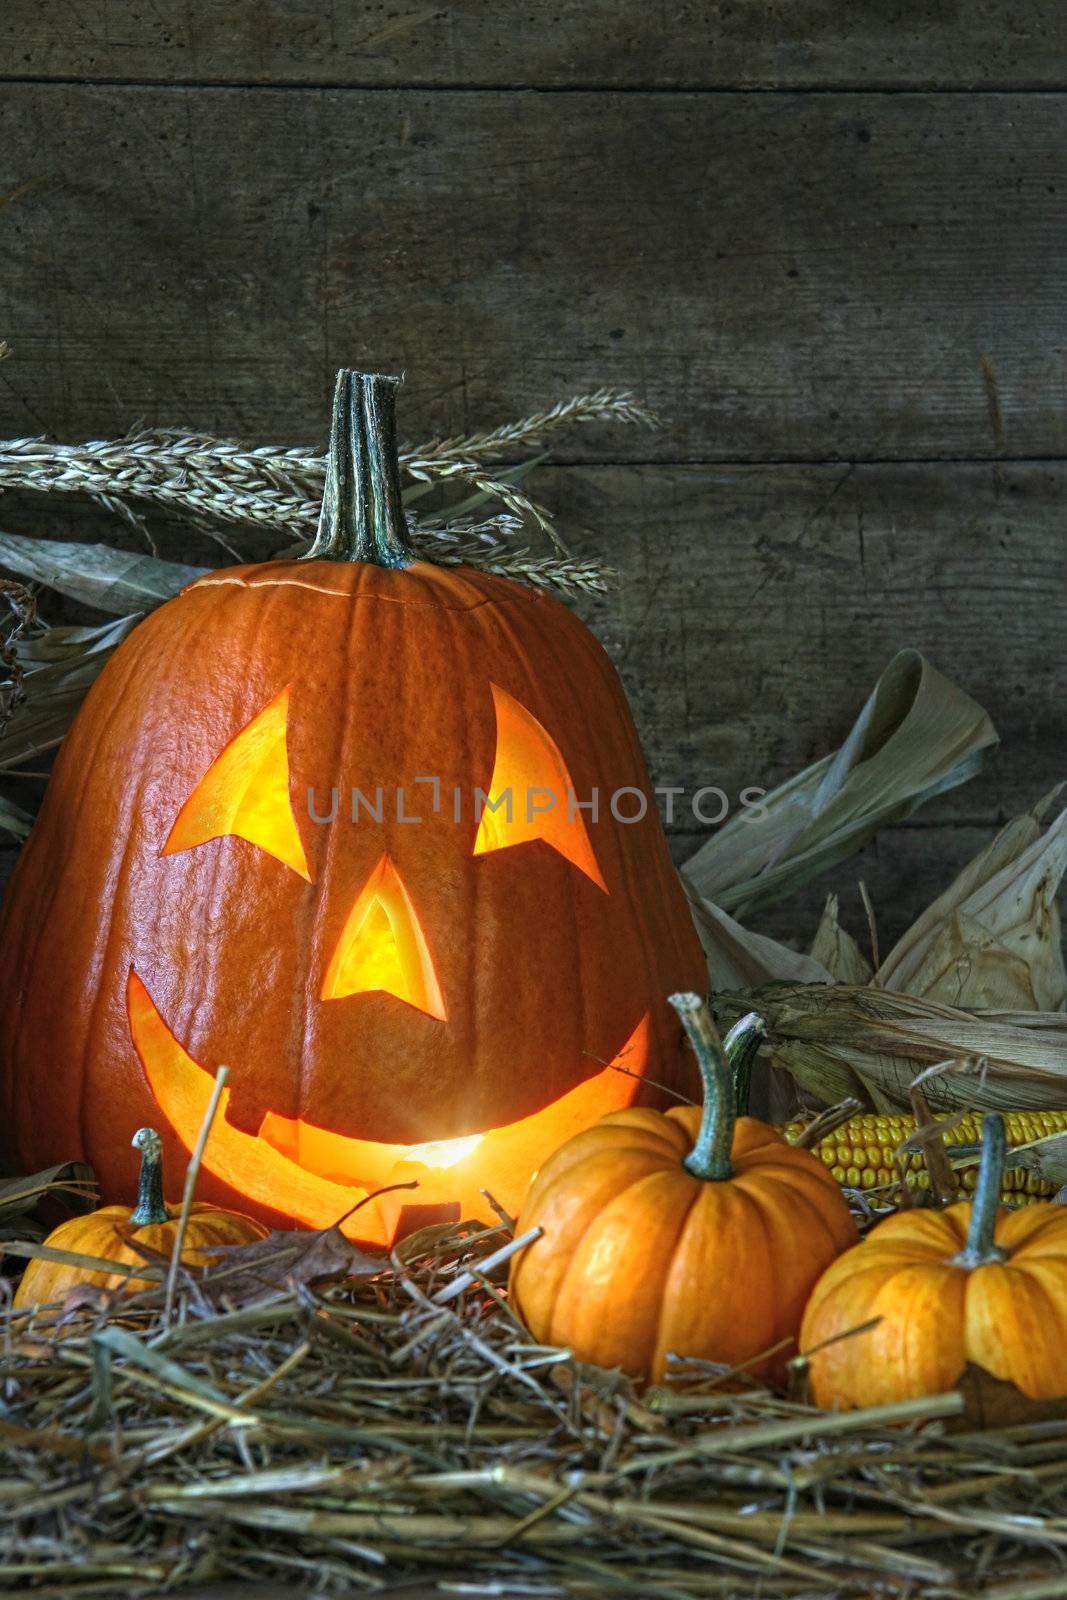 Carved jack-o-lantern lit for halloween